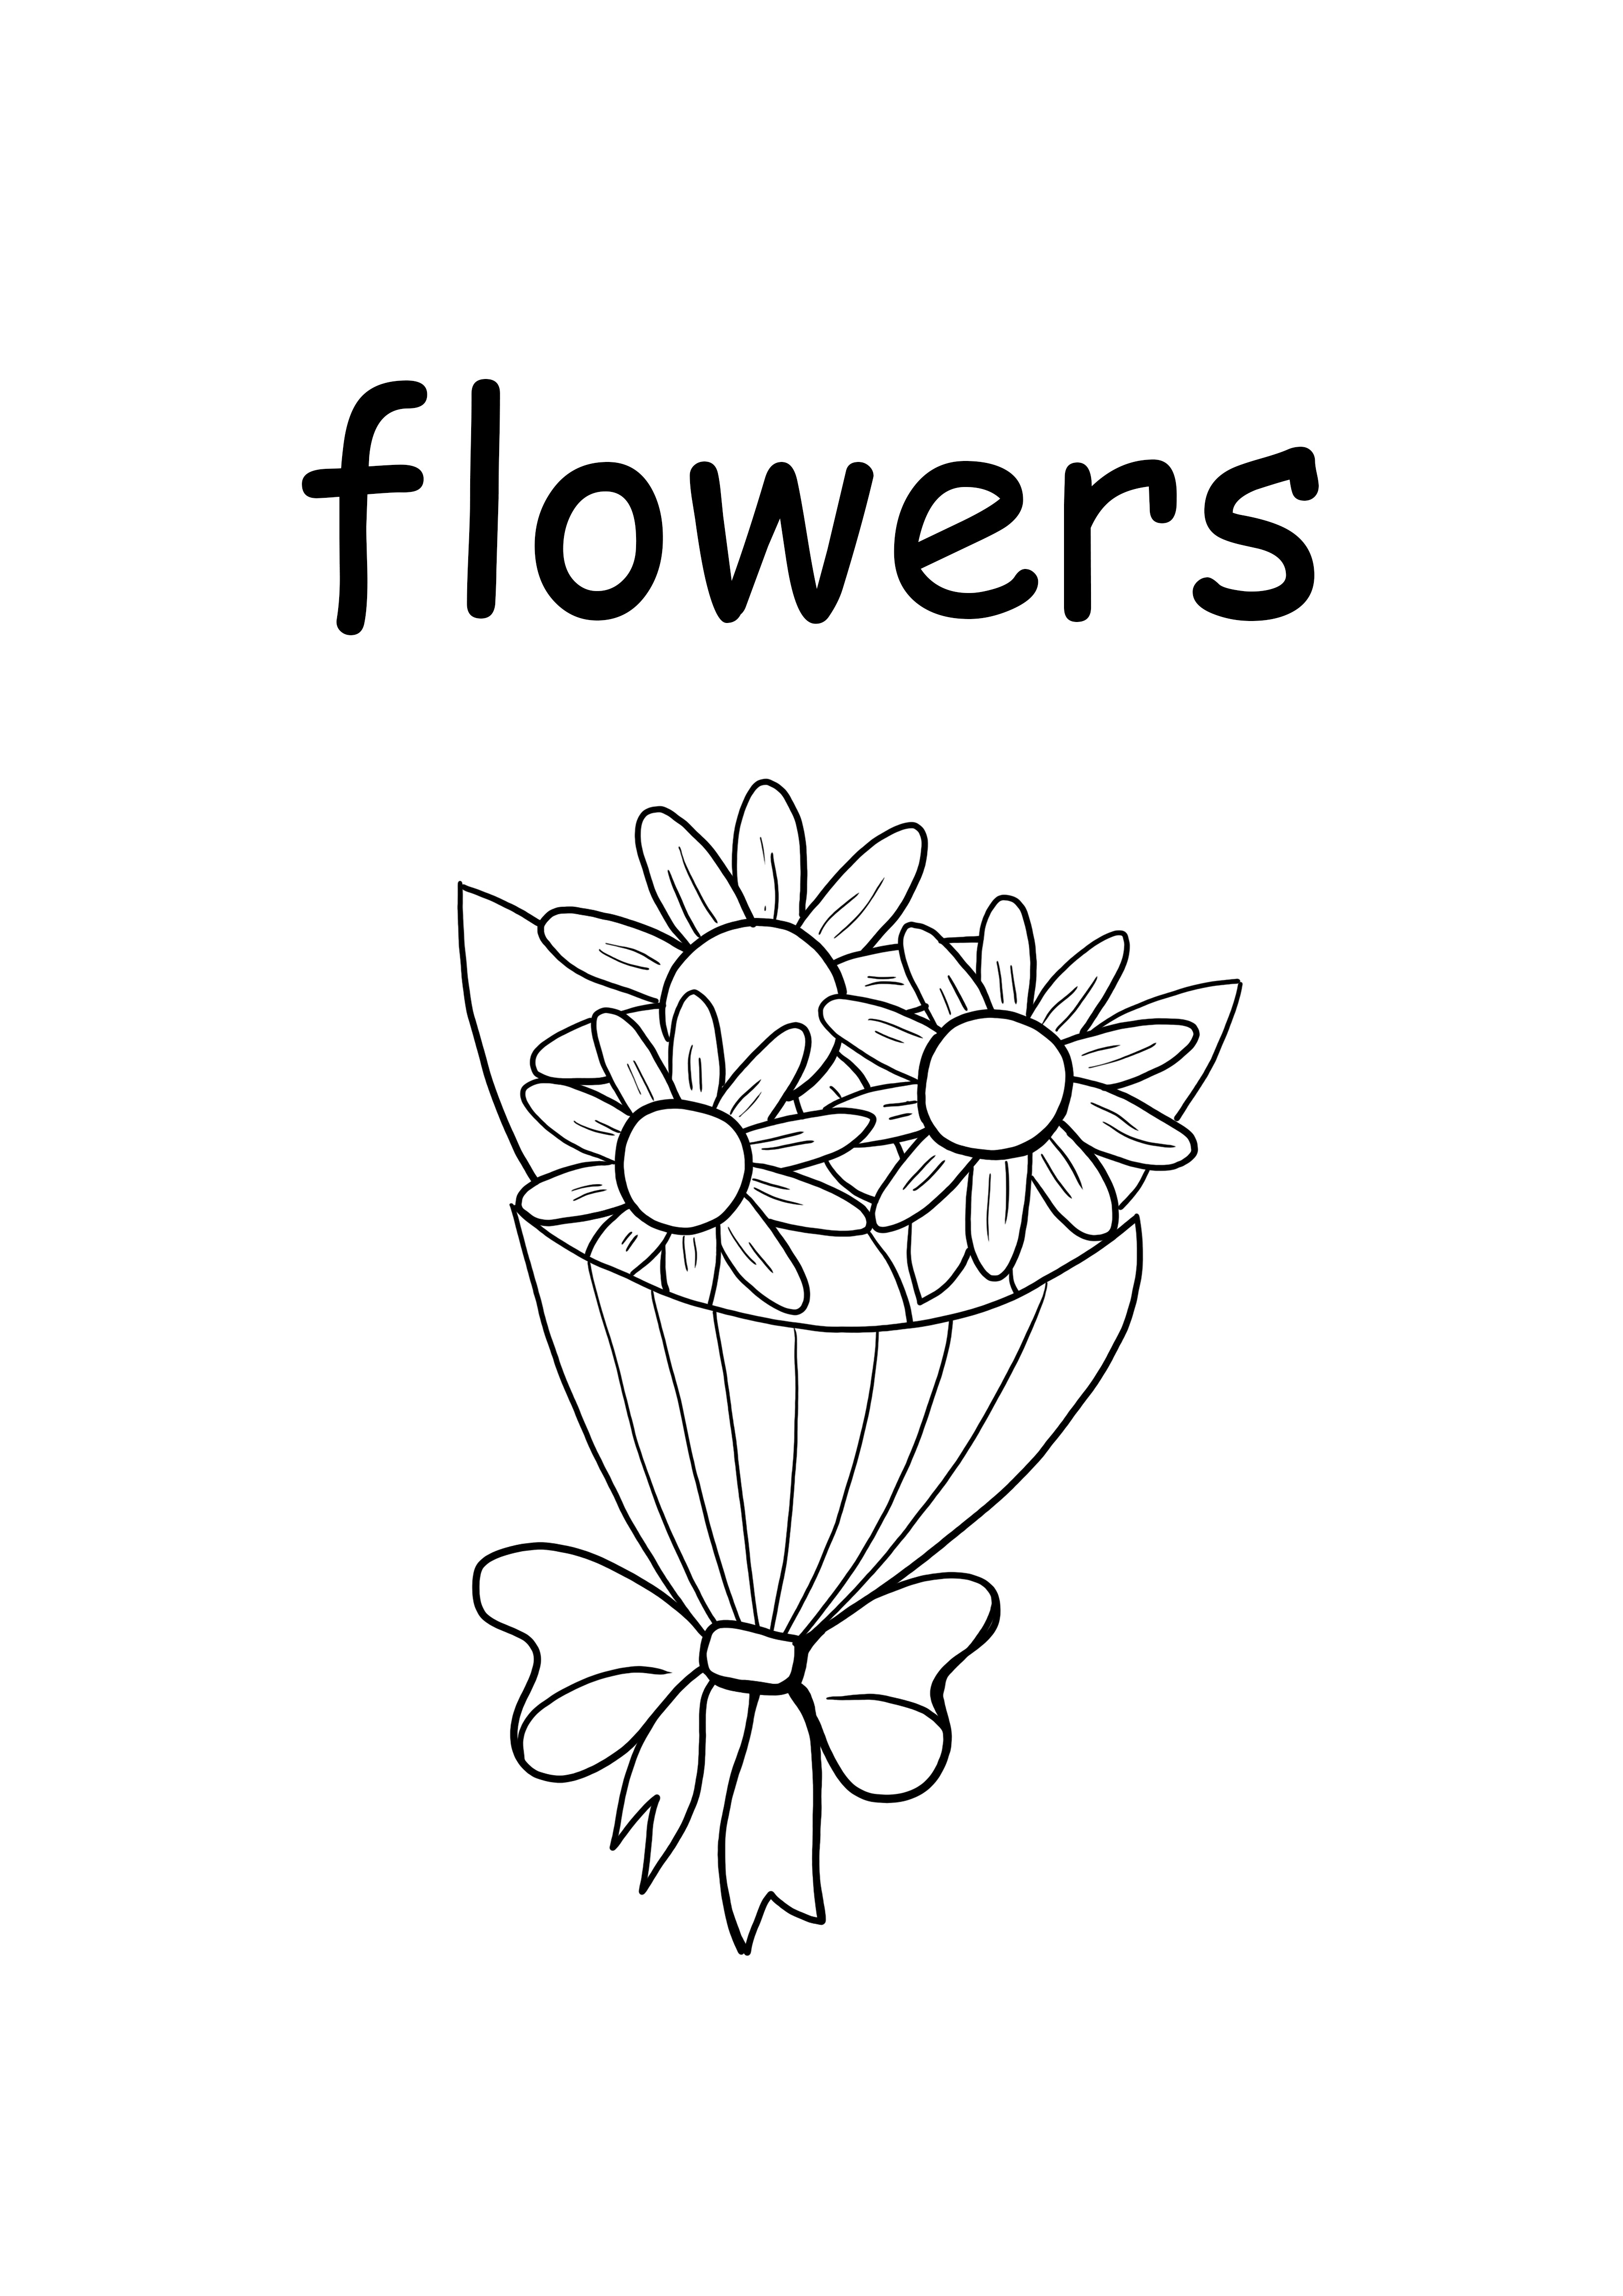 花の場合は小文字の単語を自由に印刷してページに色を付ける